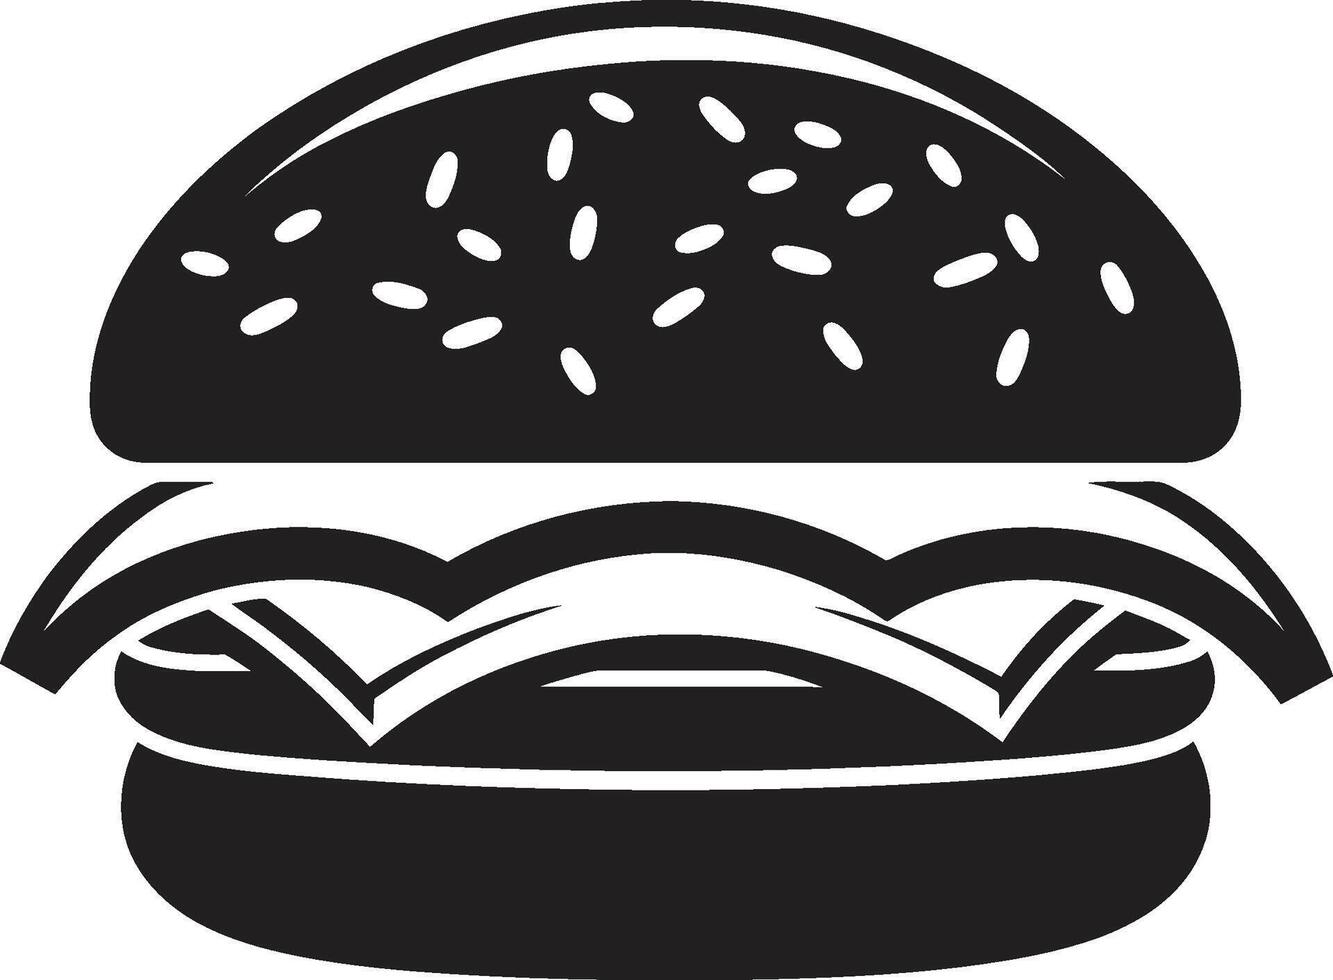 classico hamburger splendore monocromatico icona iconico hamburger design nero emblema vettore